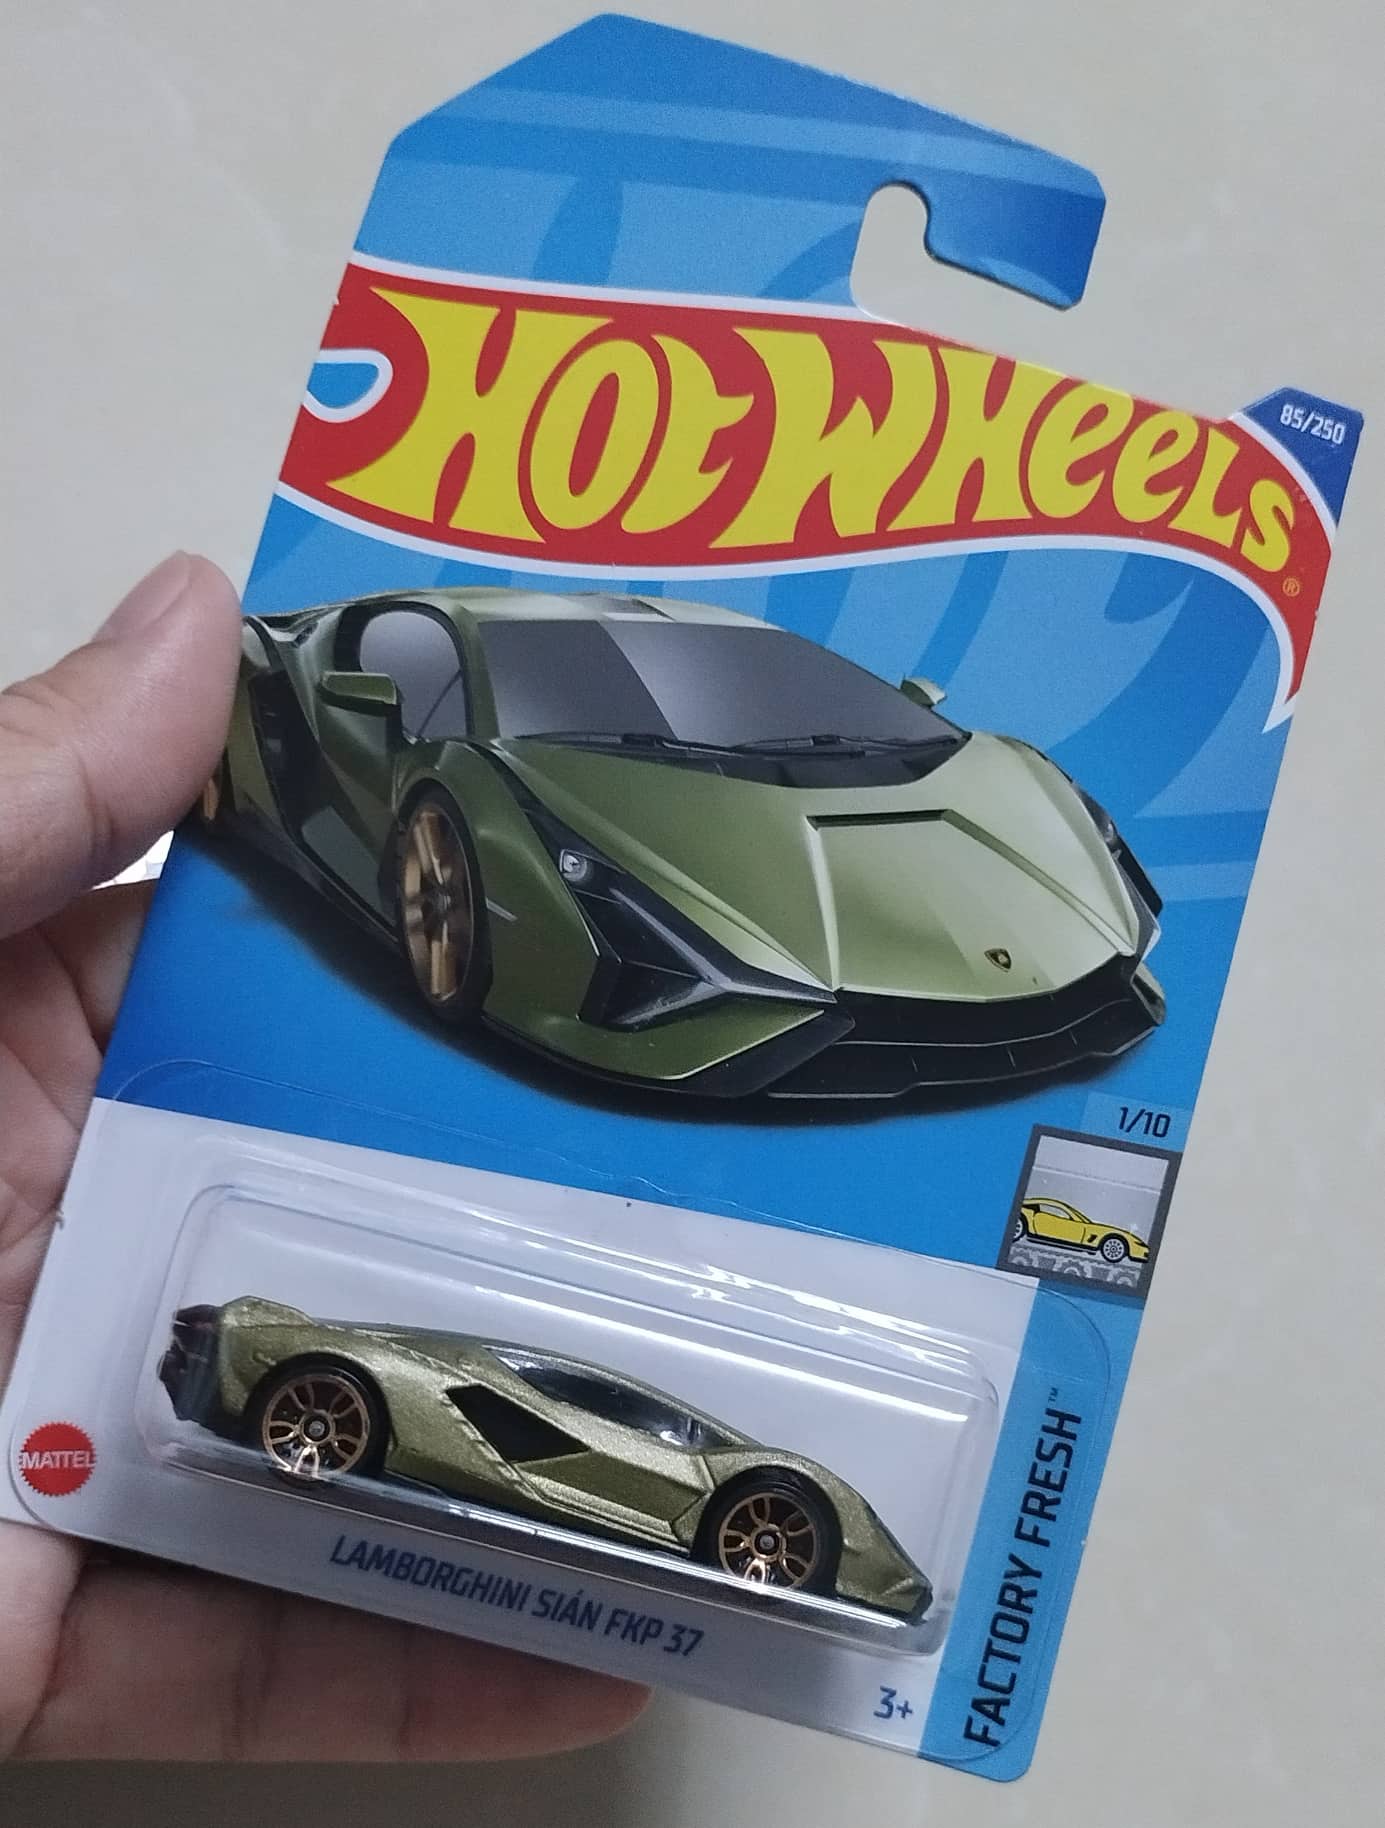 Bạn đang muốn tìm mua dòng sản phẩm Hotwheels chất lượng với mức giá tốt nhất? Hãy đến ngay với chúng tôi để sở hữu những mẫu xe đồ chơi siêu chất, đẹp mắt và vô cùng độc đáo.